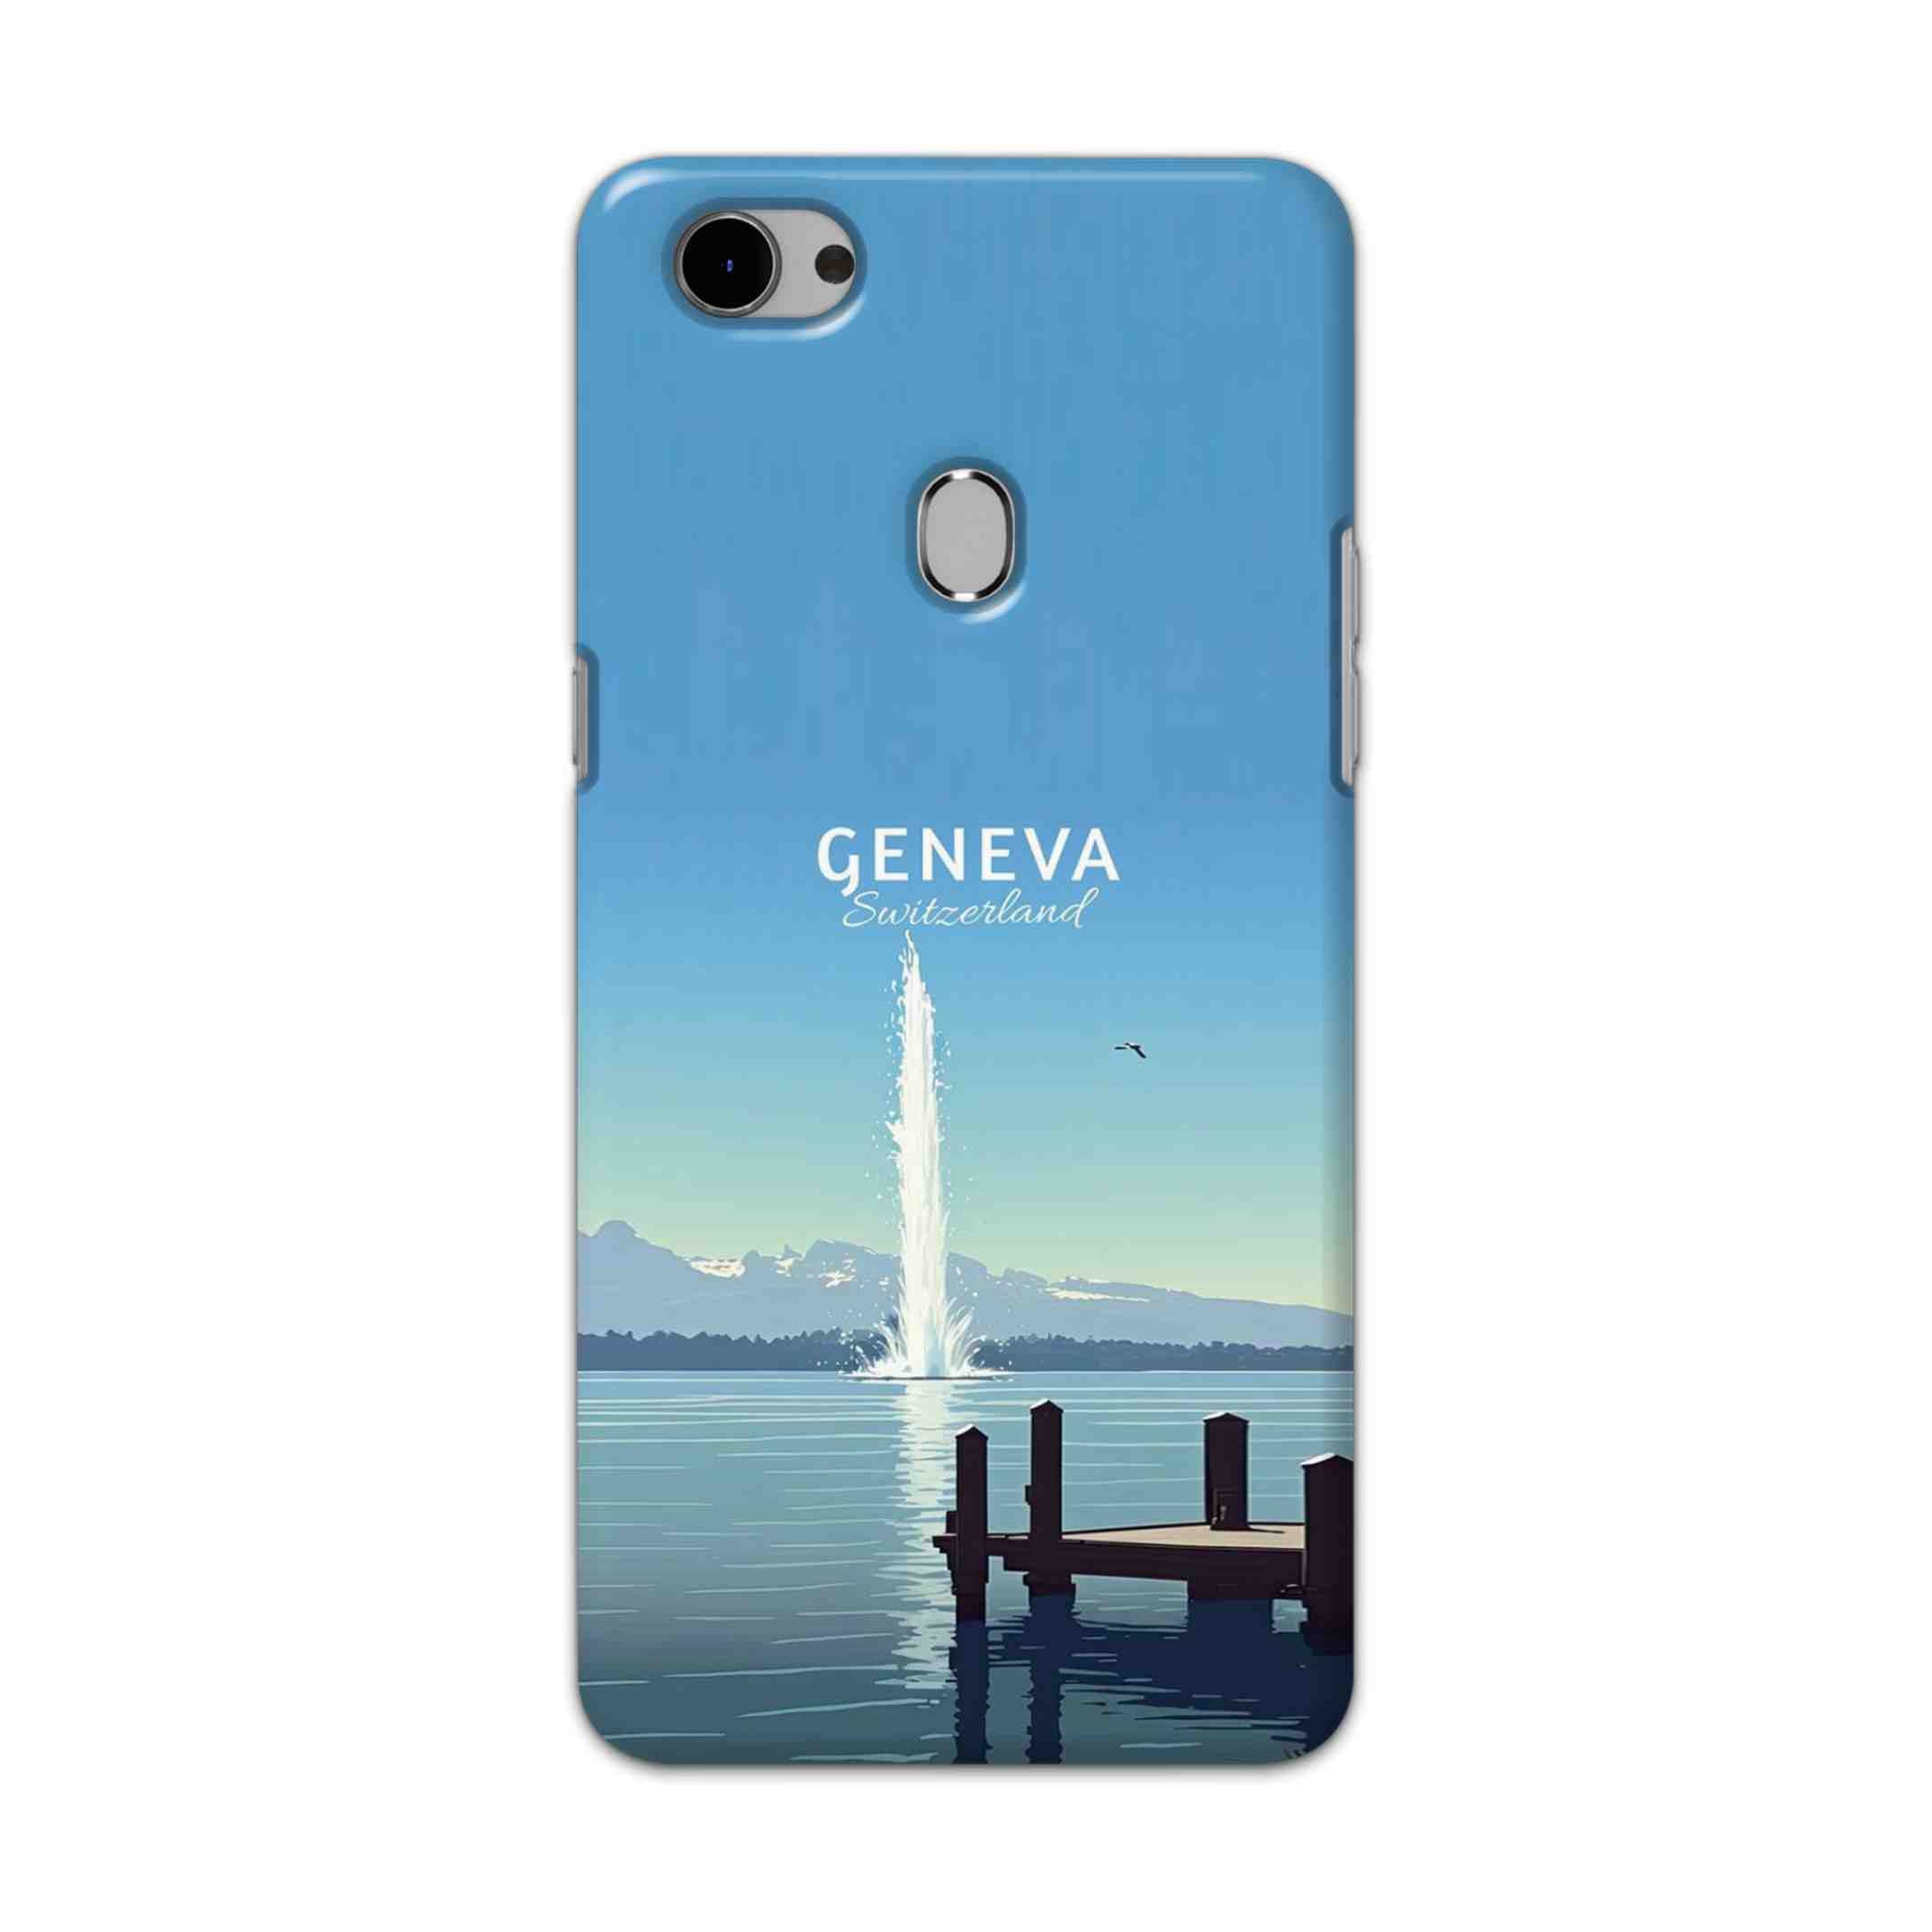 Buy Geneva Hard Back Mobile Phone Case Cover For Oppo F7 Online